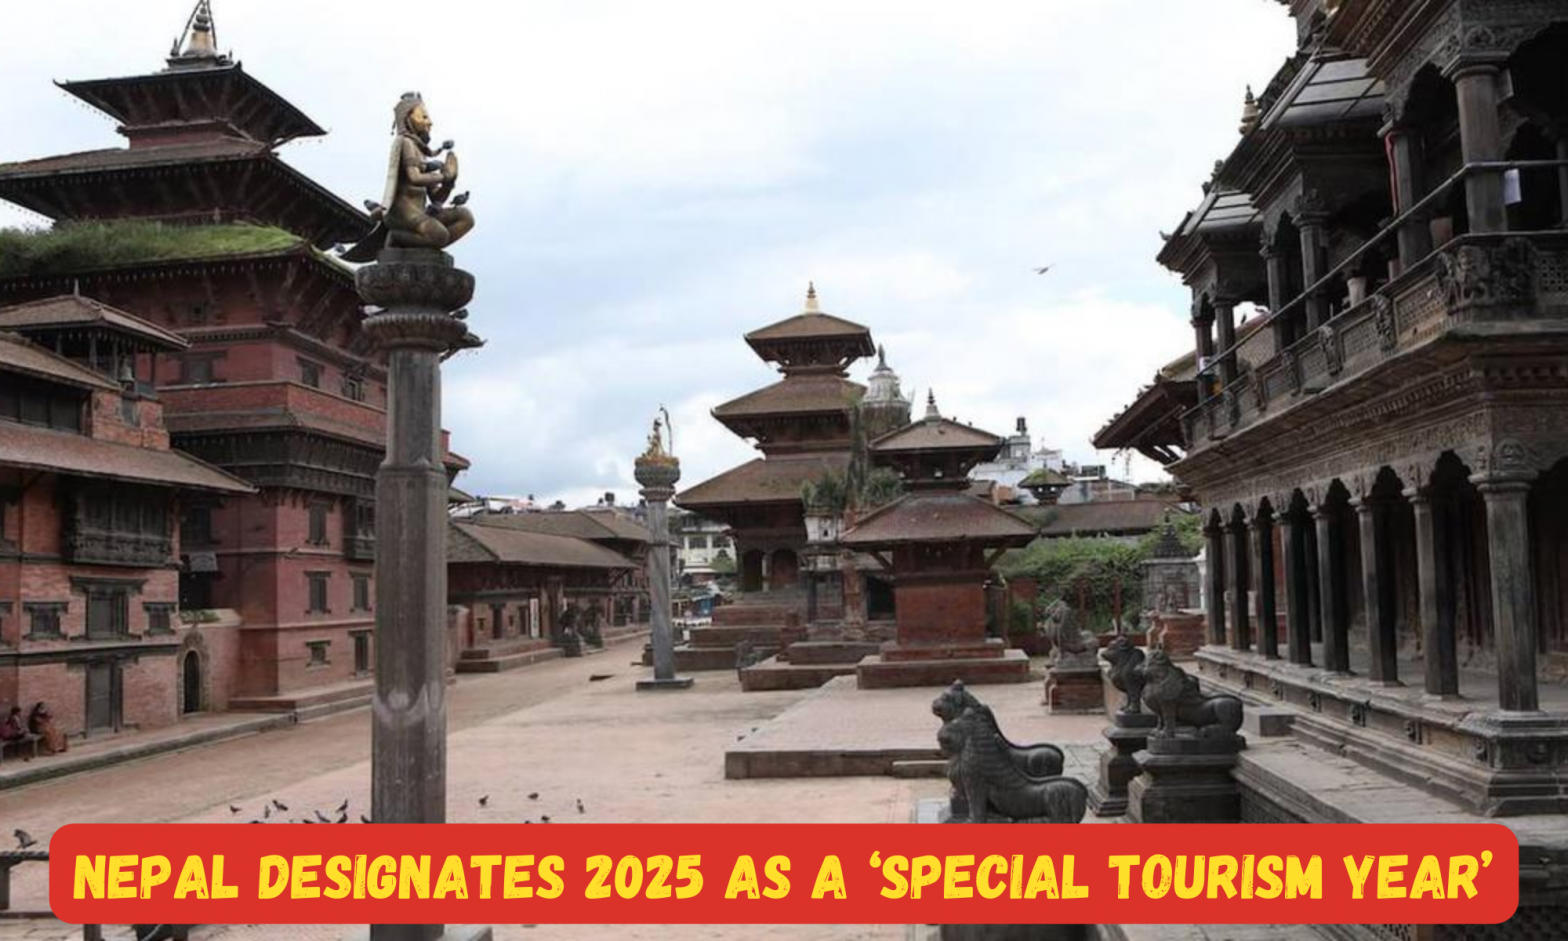 Nepal designates 2025 as a ‘Special tourism year’